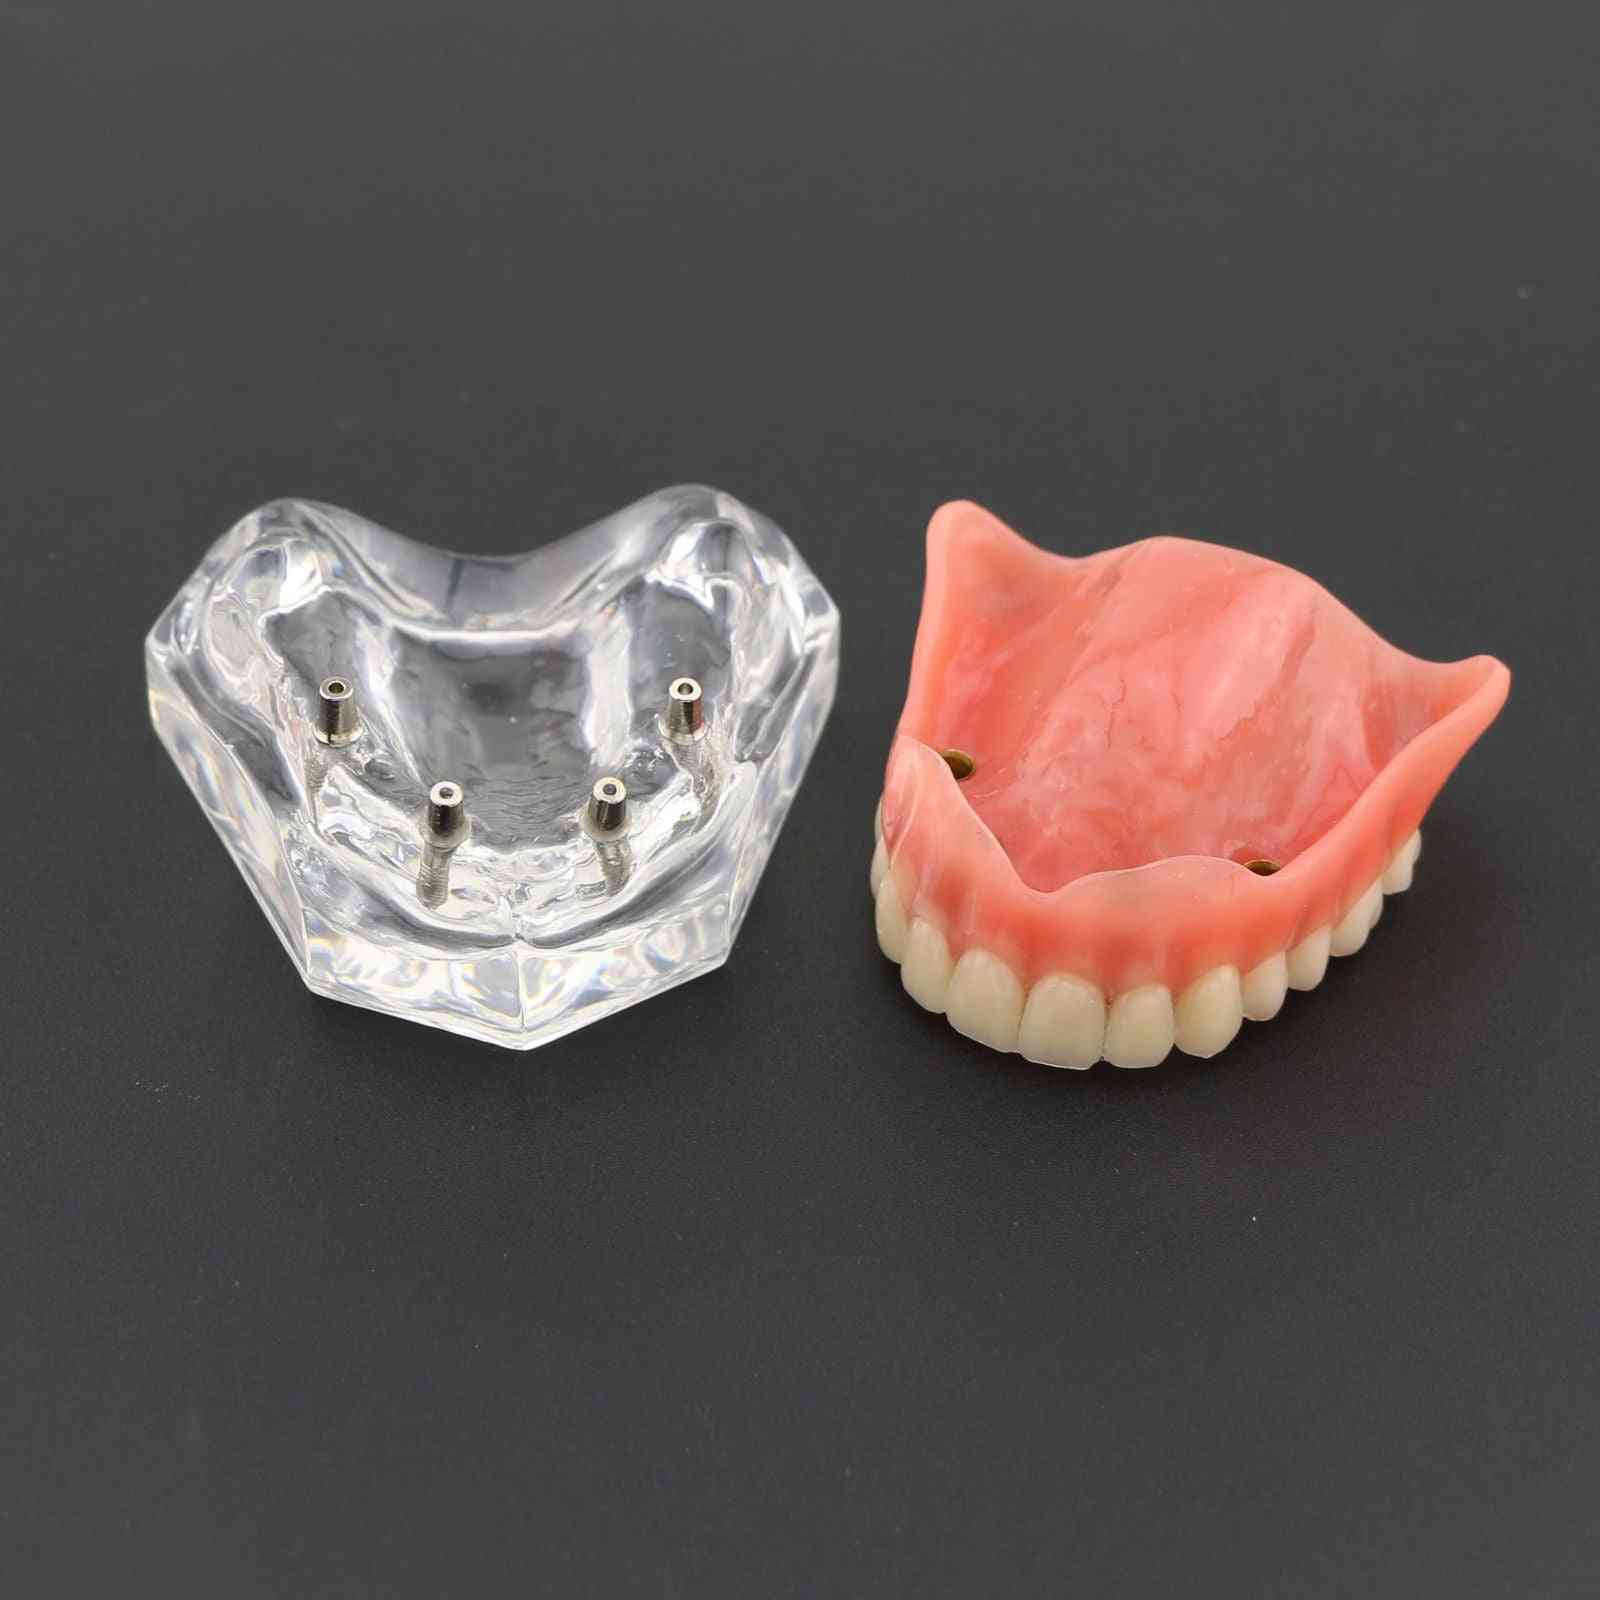 1pcs prothèse dentaire supérieure supérieure 4 implants modèle de démonstration, modèle de dents